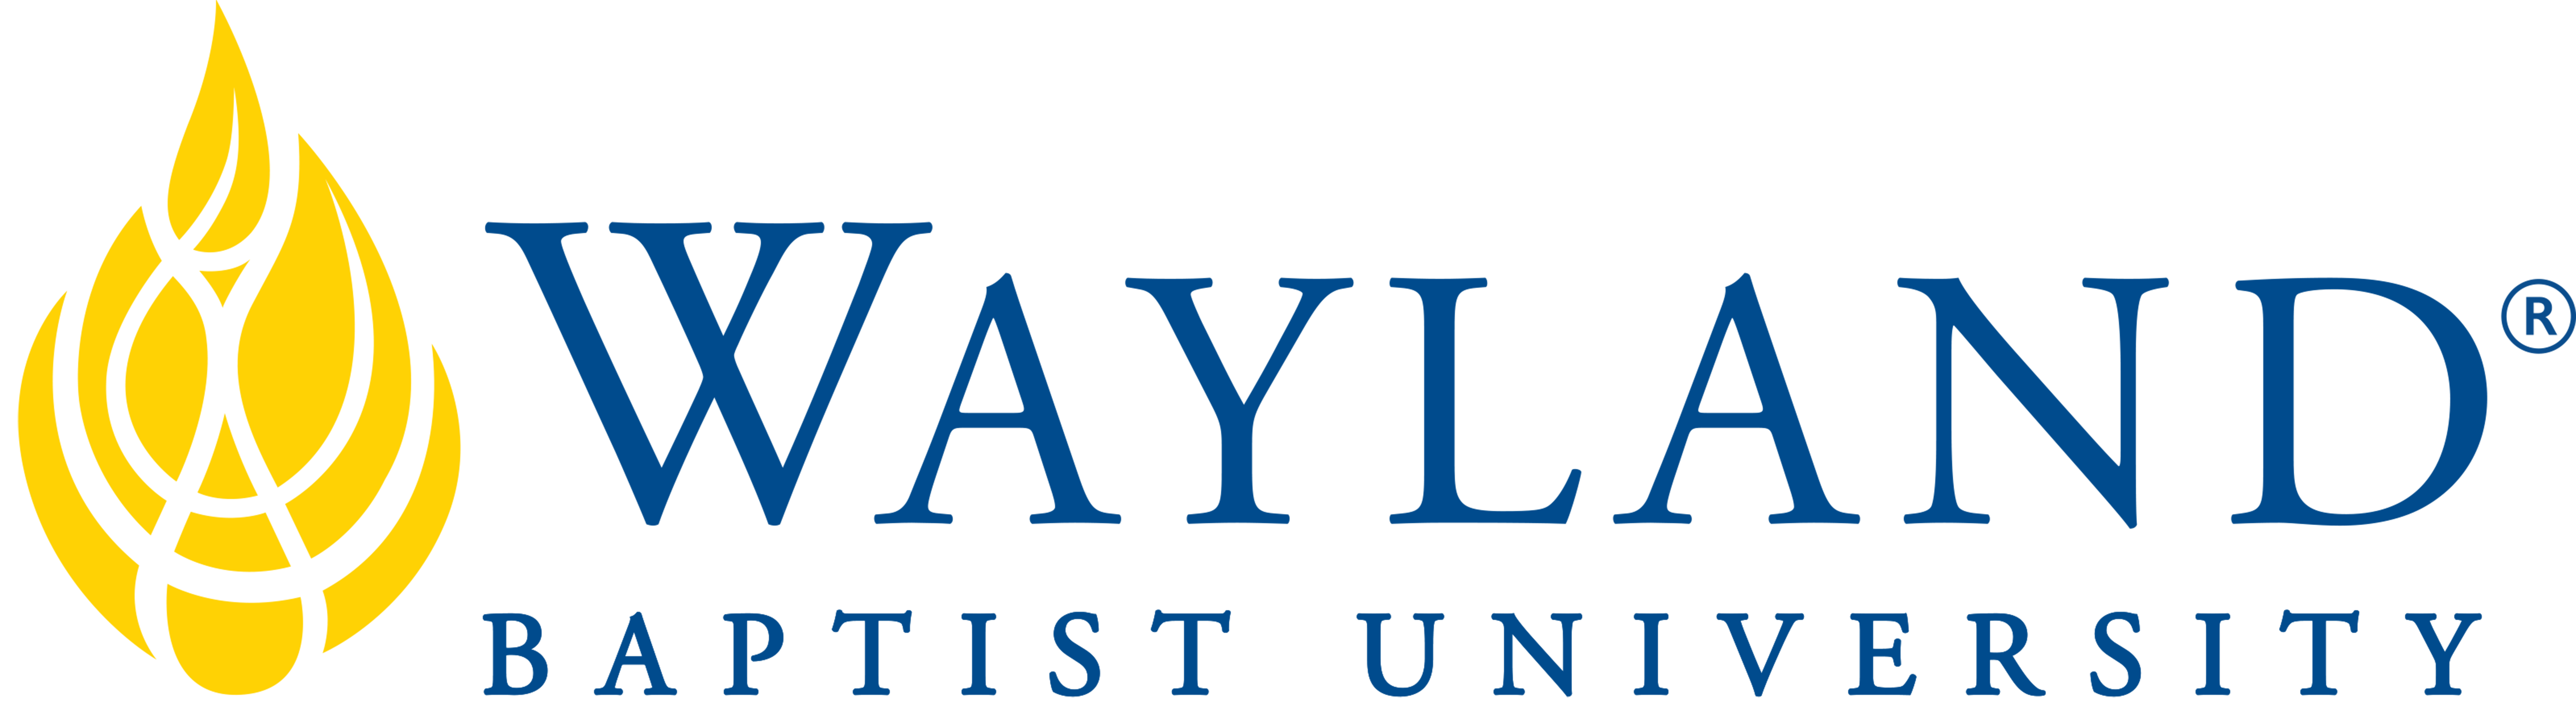 Wayland Baptist University Amarillo logo